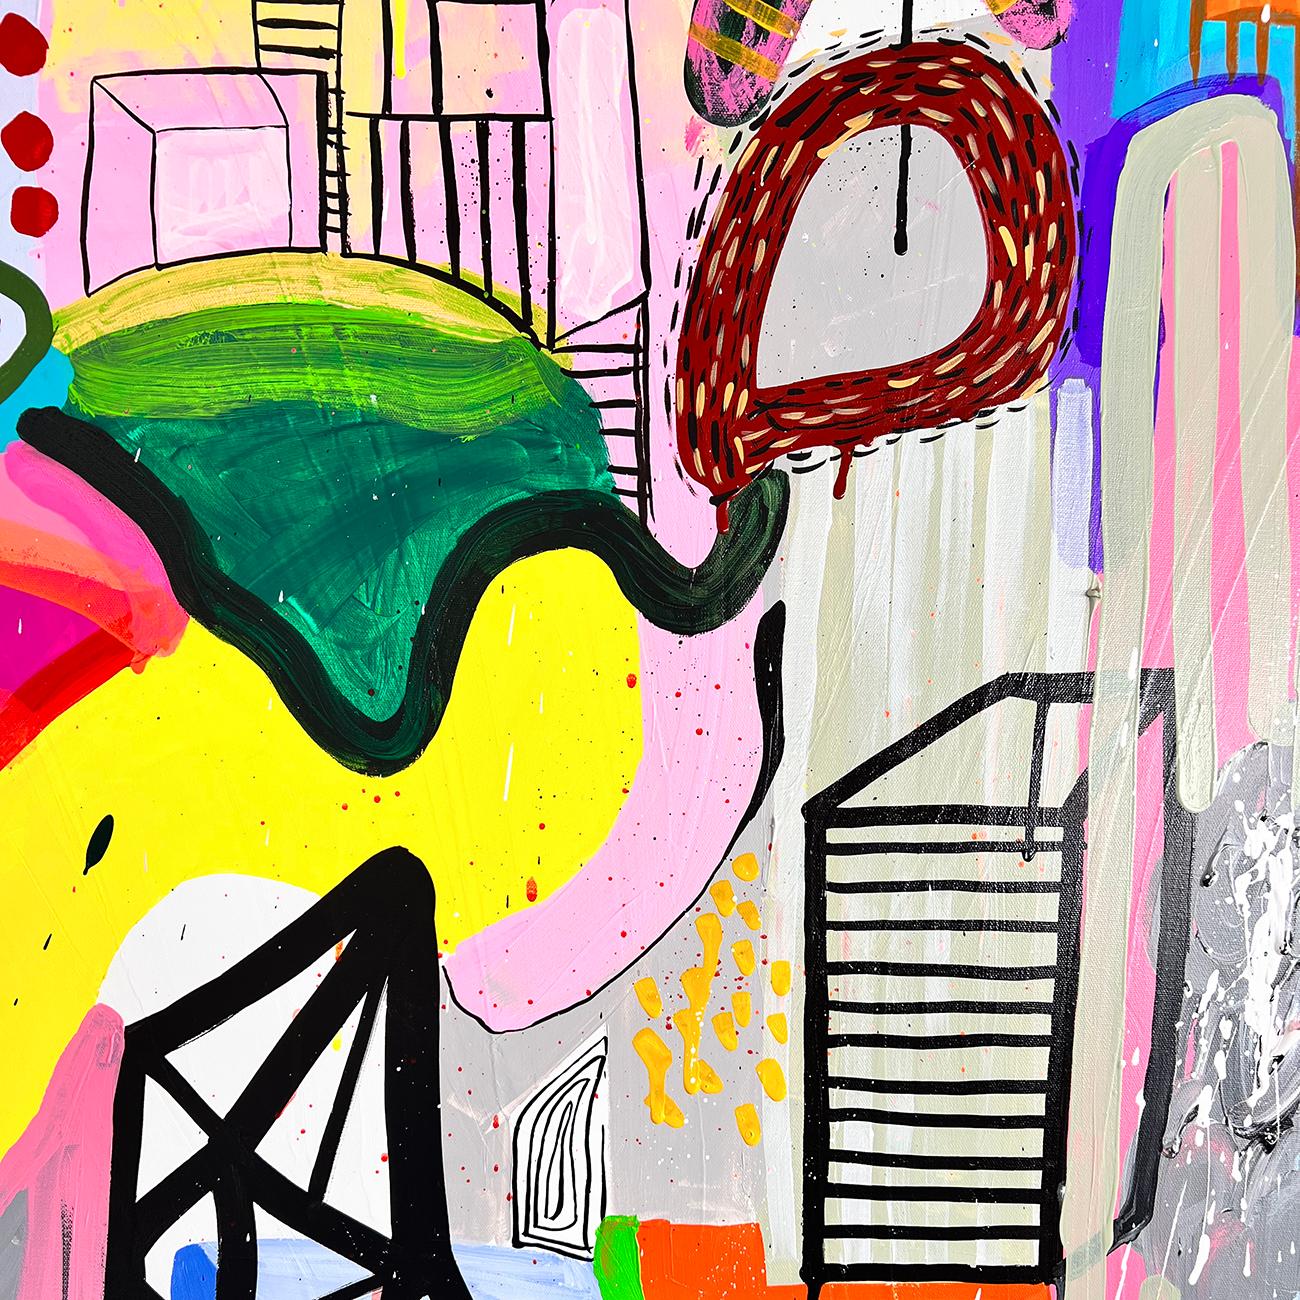 Vista I (Abstrakte Malerei)

Acryl und Gouache auf Leinwand - ungerahmt
Das Kunstwerk ist exklusiv für IdeelArt.
Daniela Marin ist eine Pionierin auf dem Gebiet der abstrakten Kunst Südamerikas. Sie versteht es meisterhaft, eine lebendige Palette